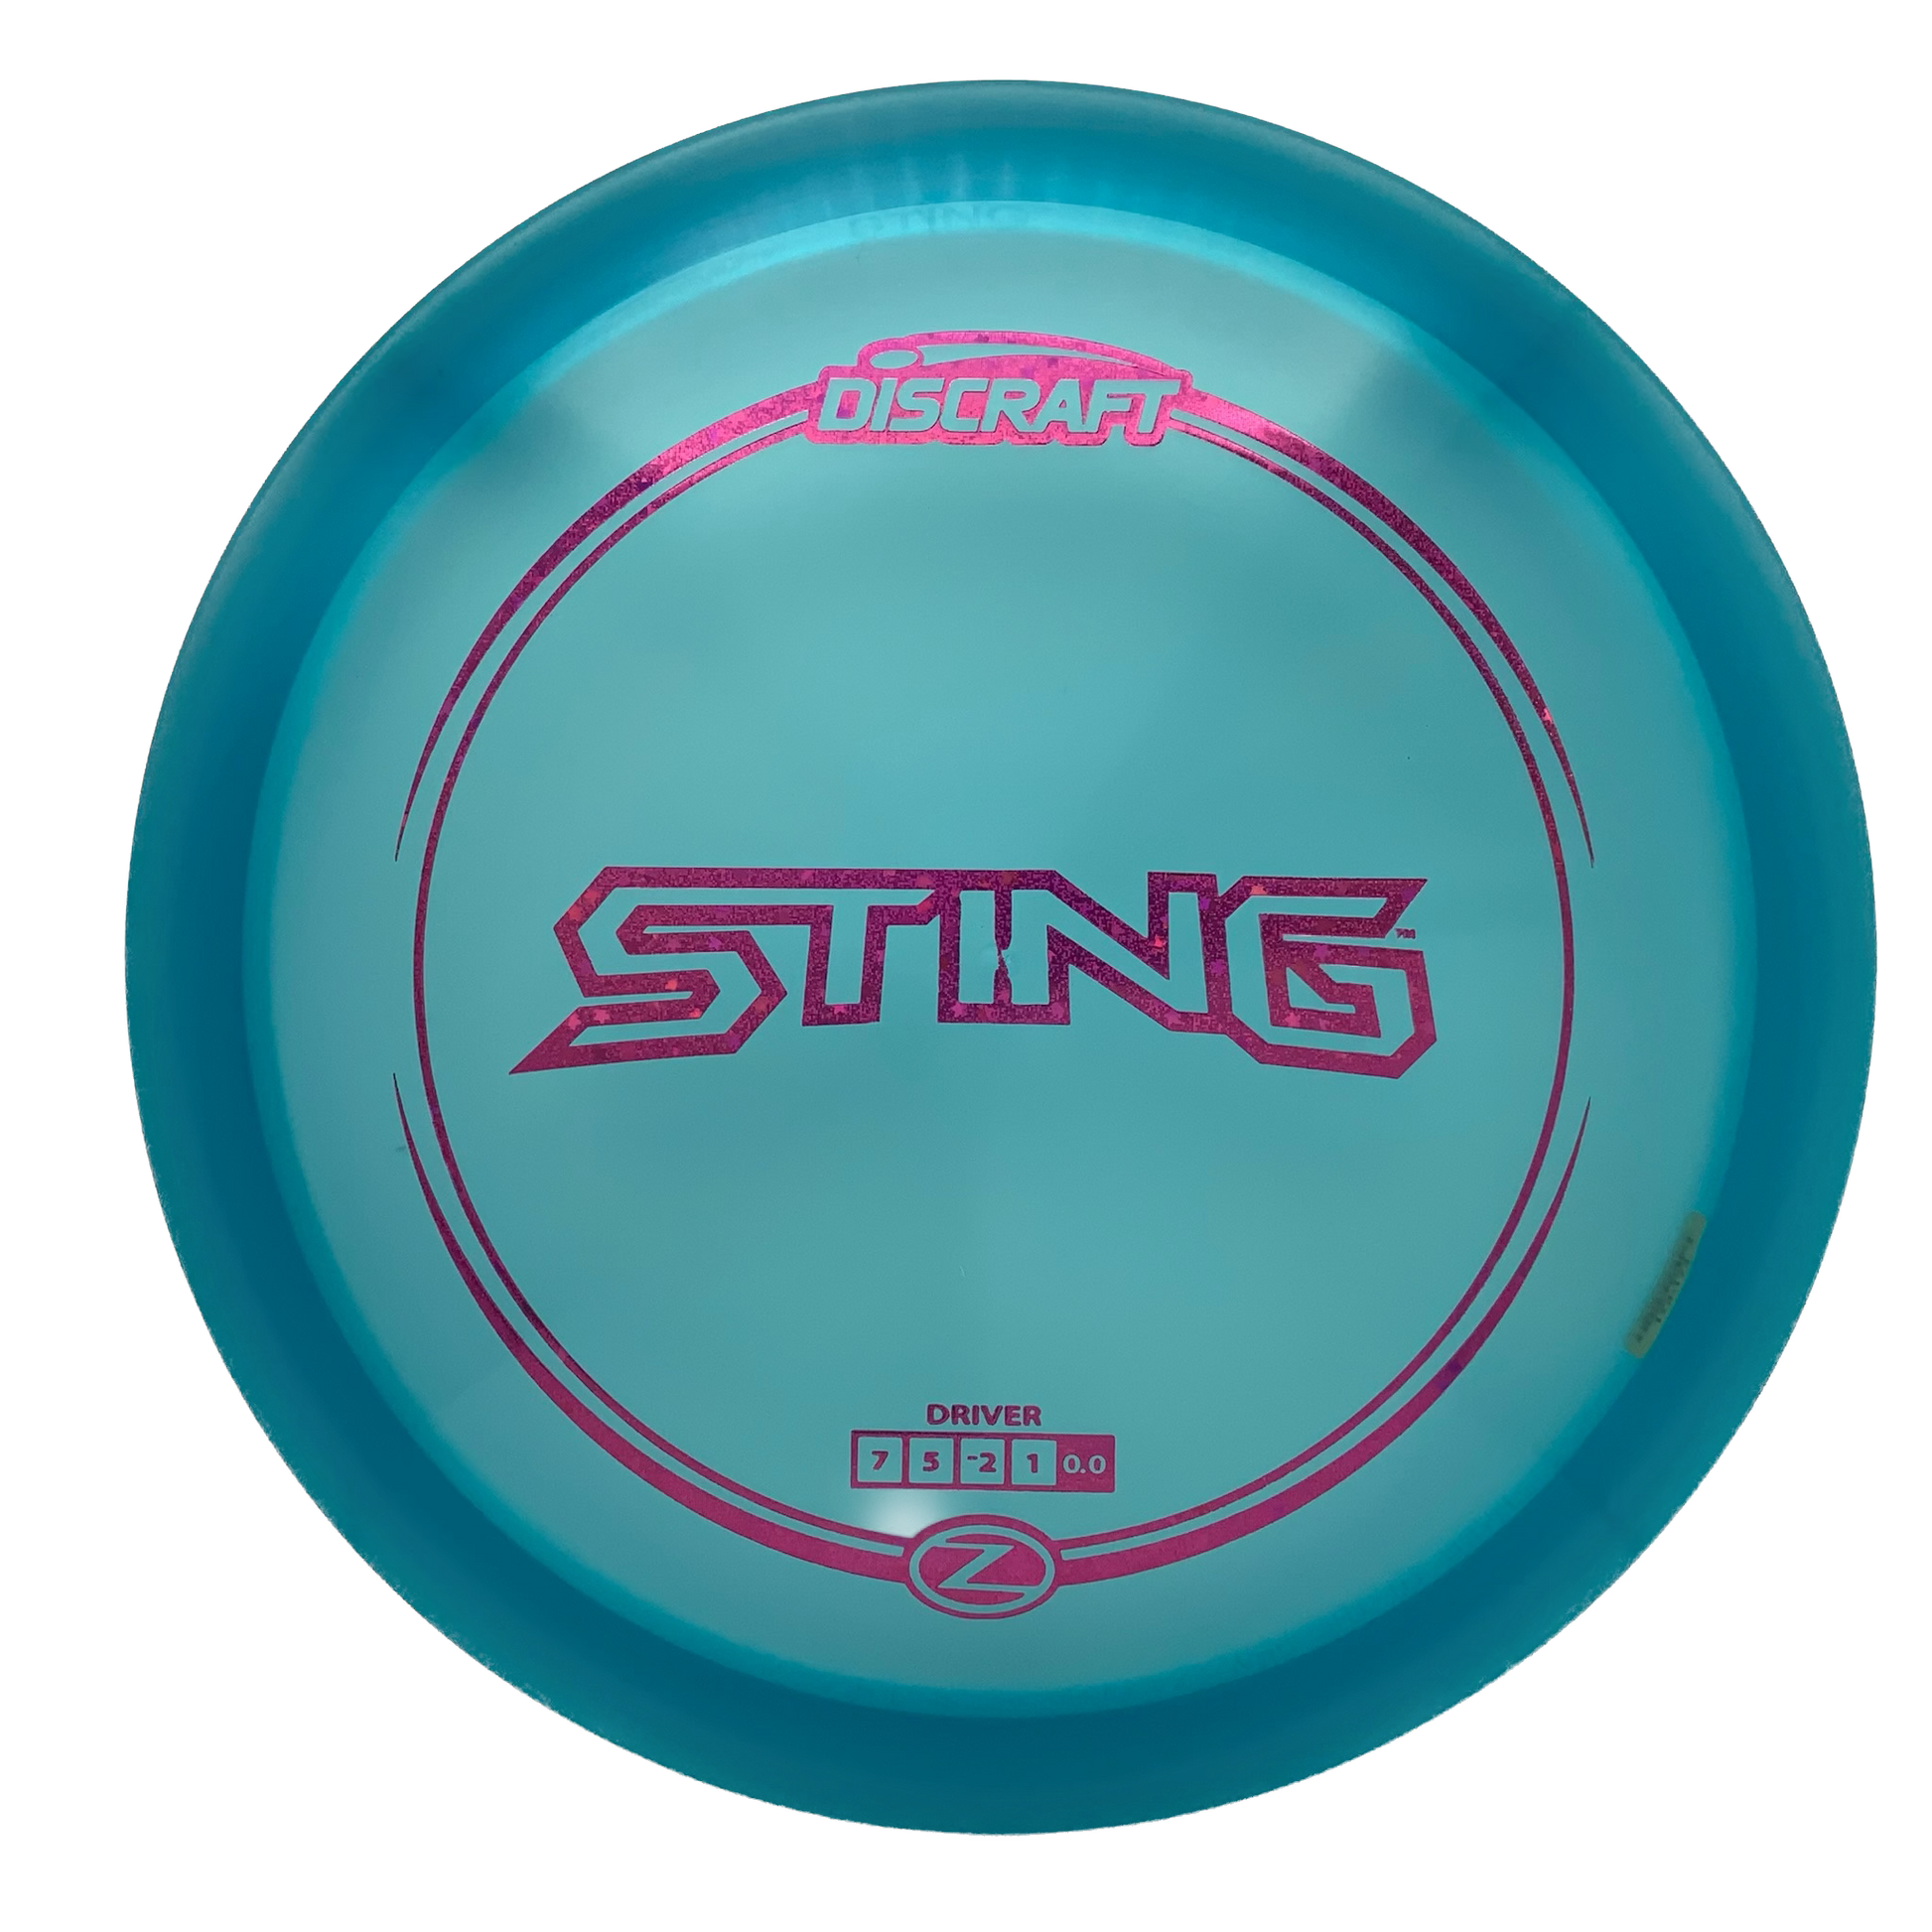 Discraft Sting - Astro Discs TX - Houston Disc Golf